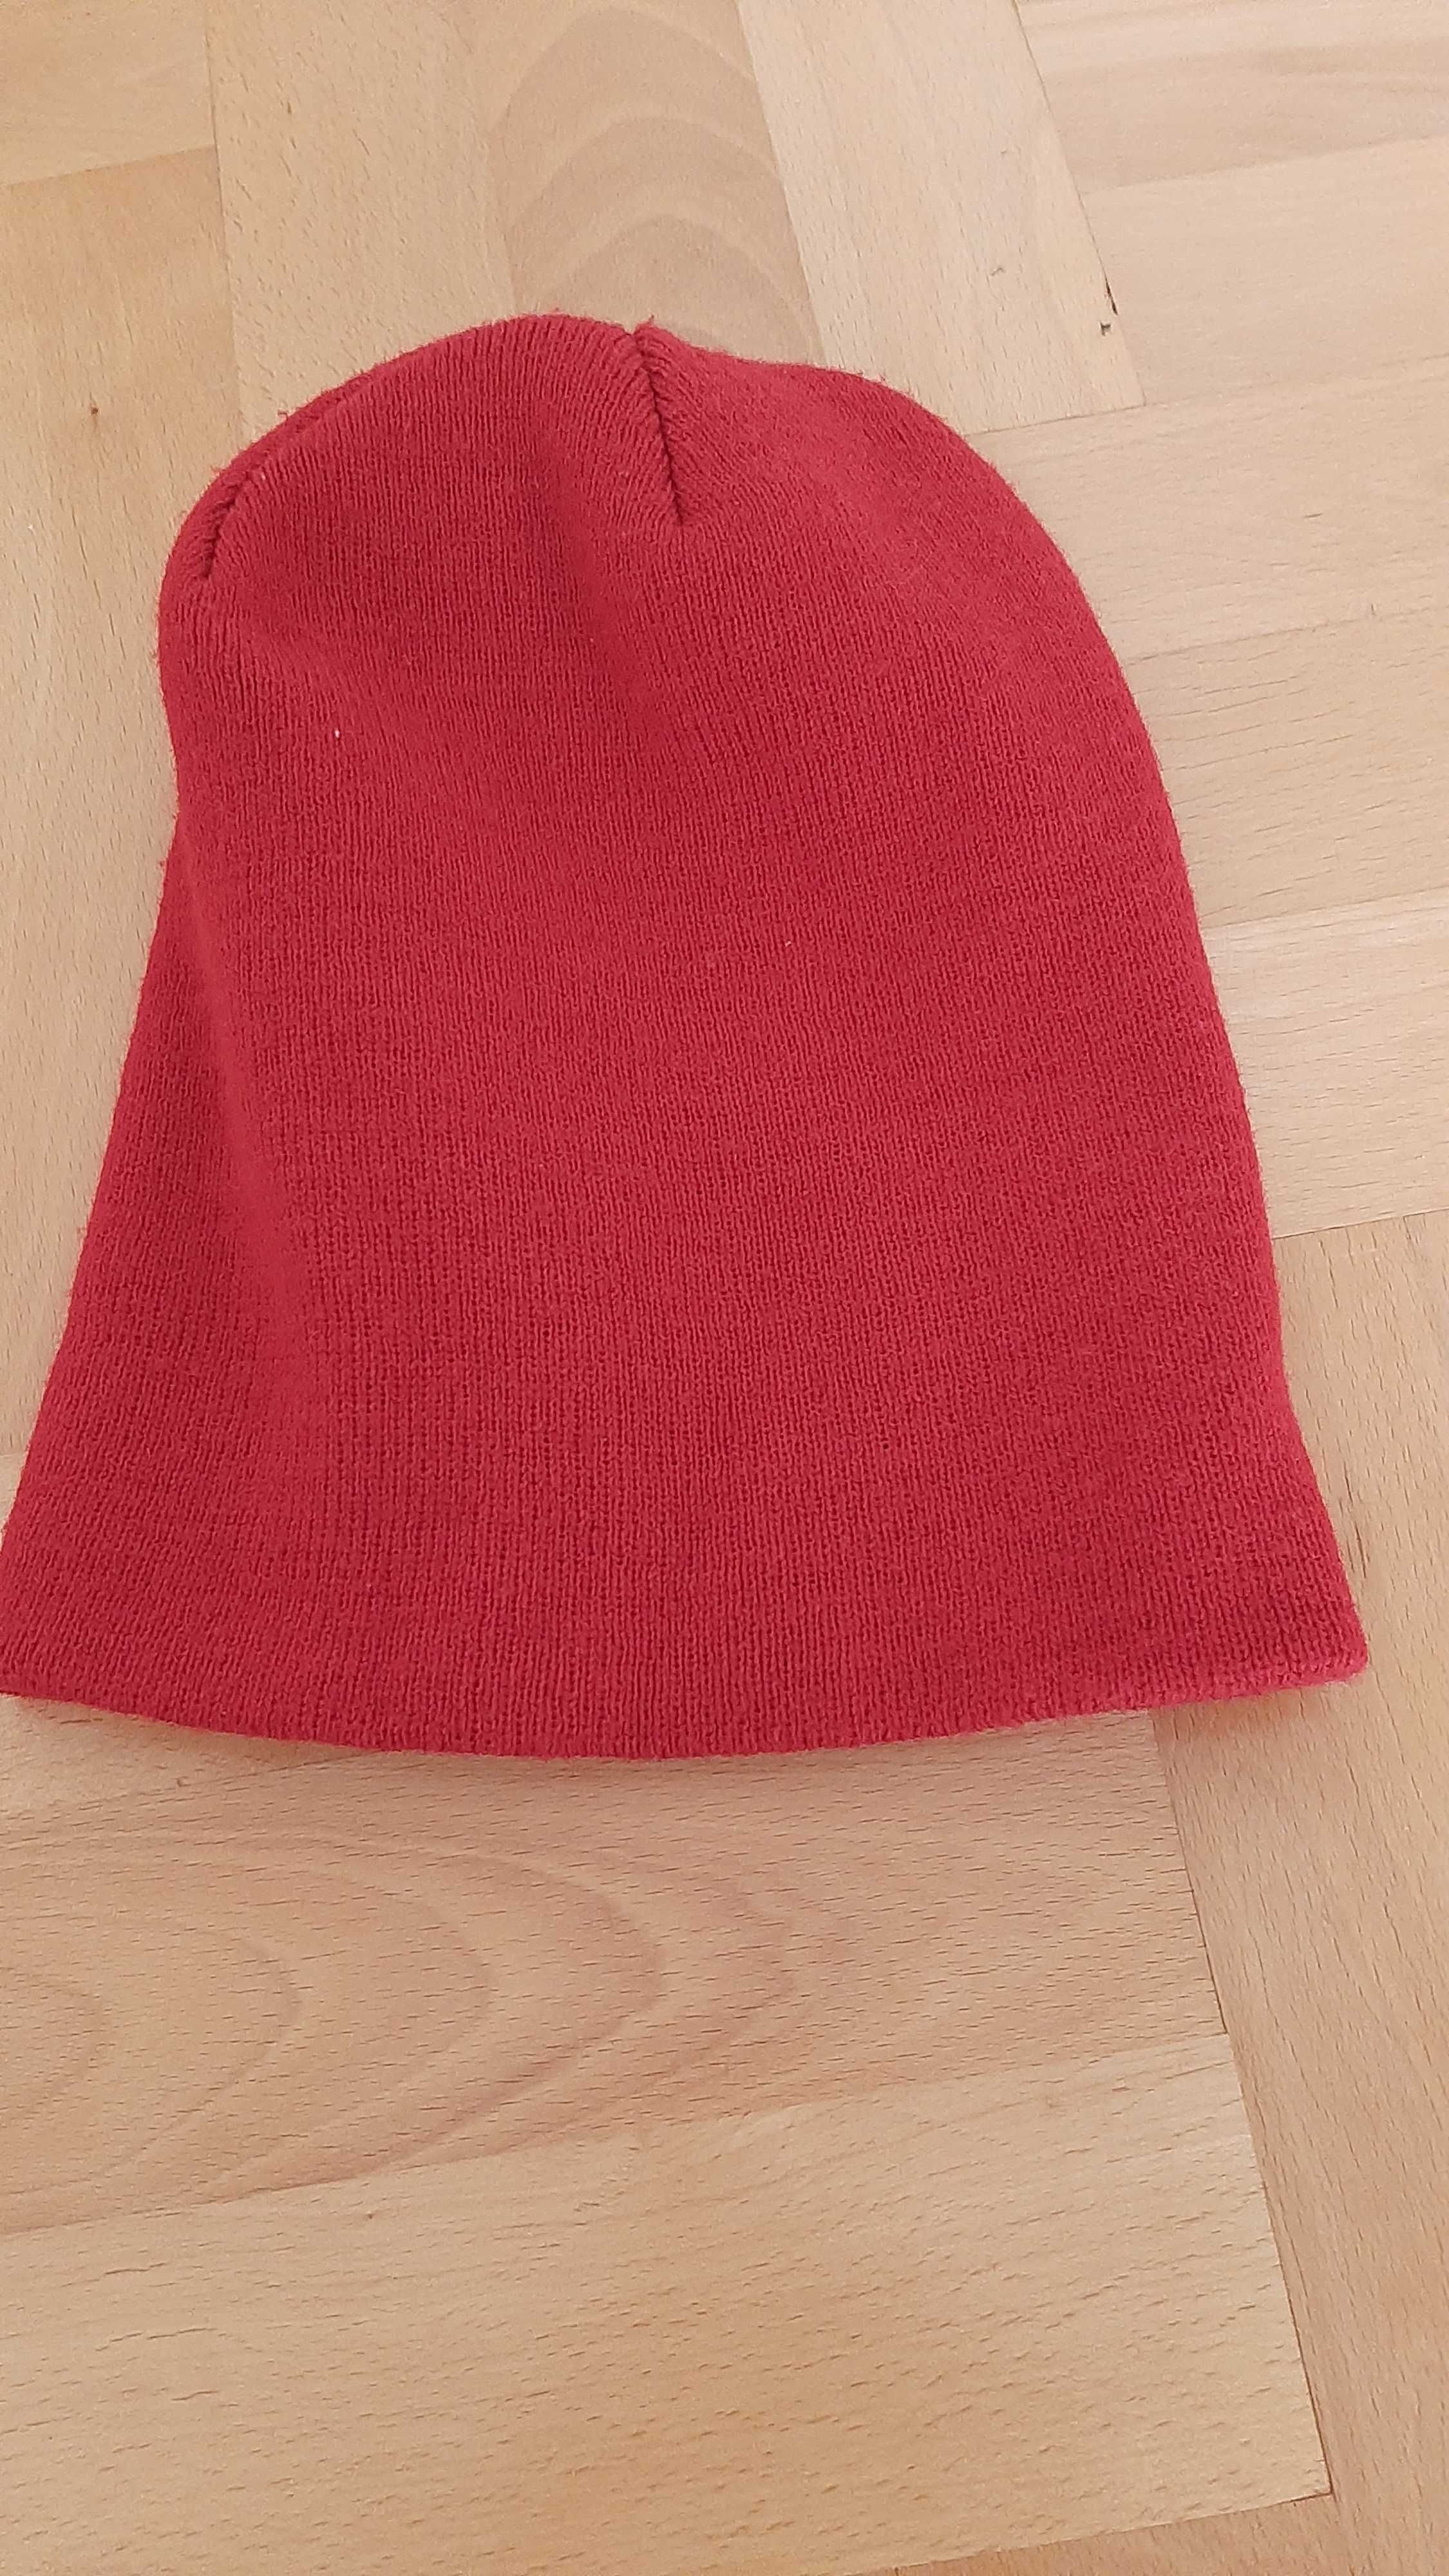 Klasyczna czerwona czapka damska